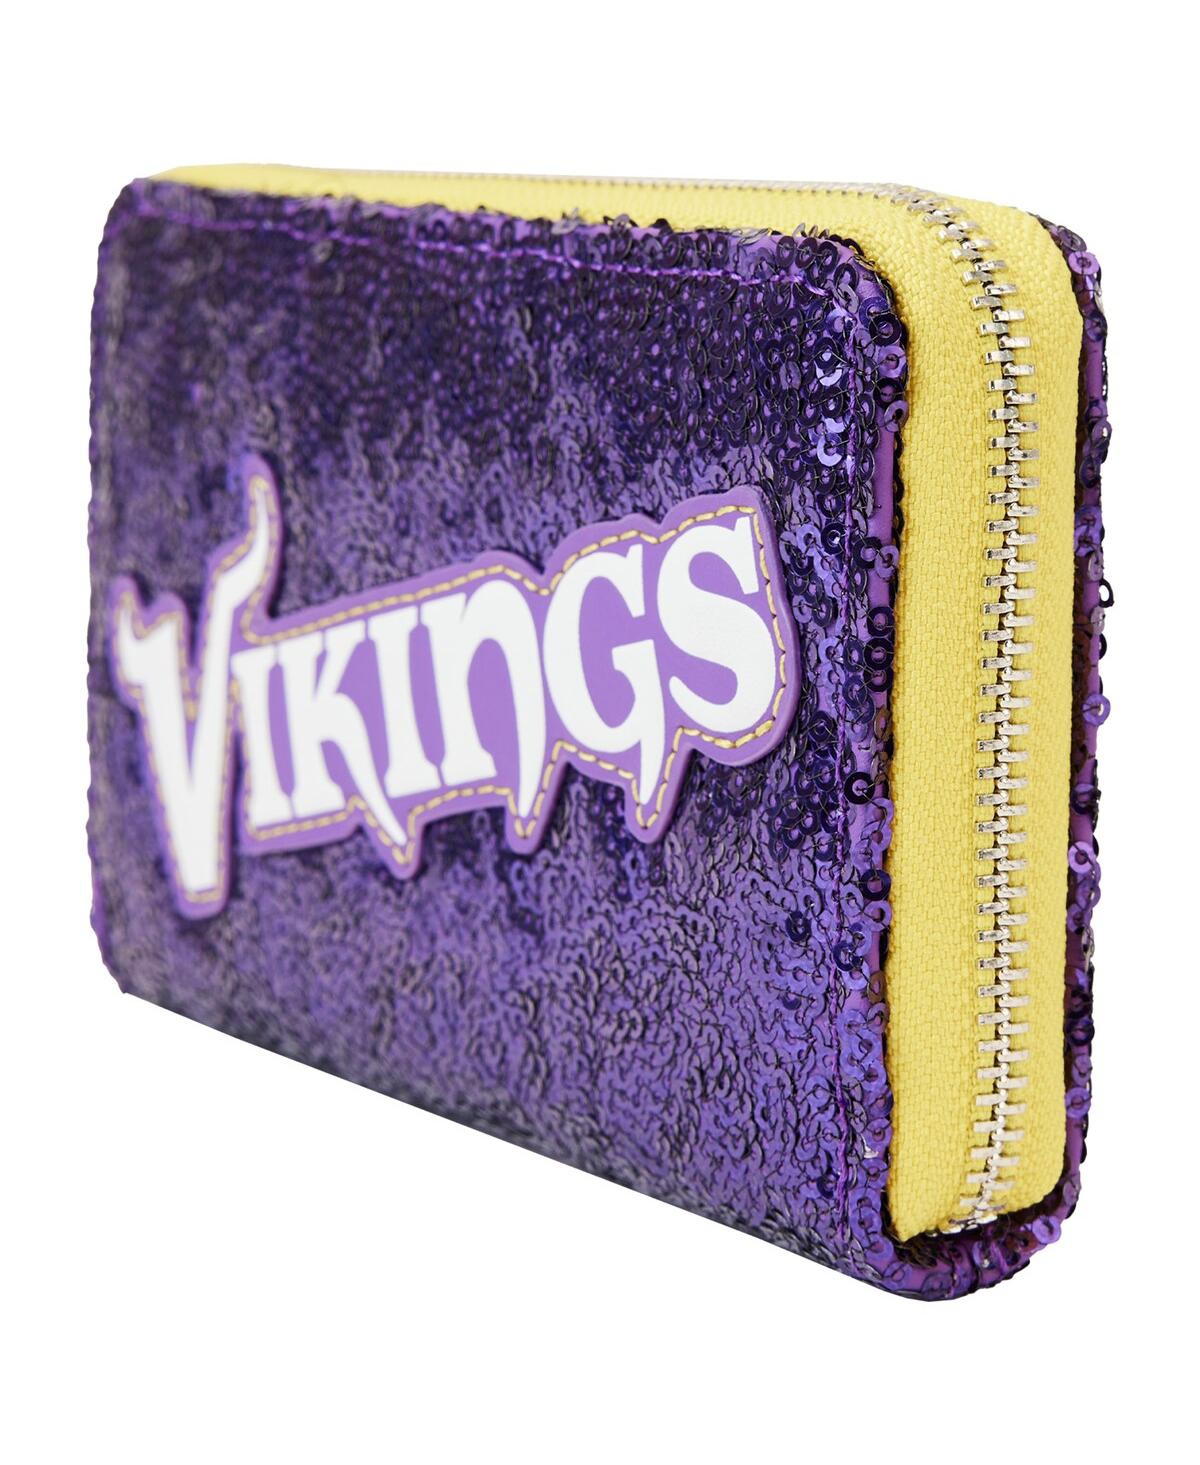 Shop Loungefly Women's  Minnesota Vikings Sequin Zip-around Wallet In Purple